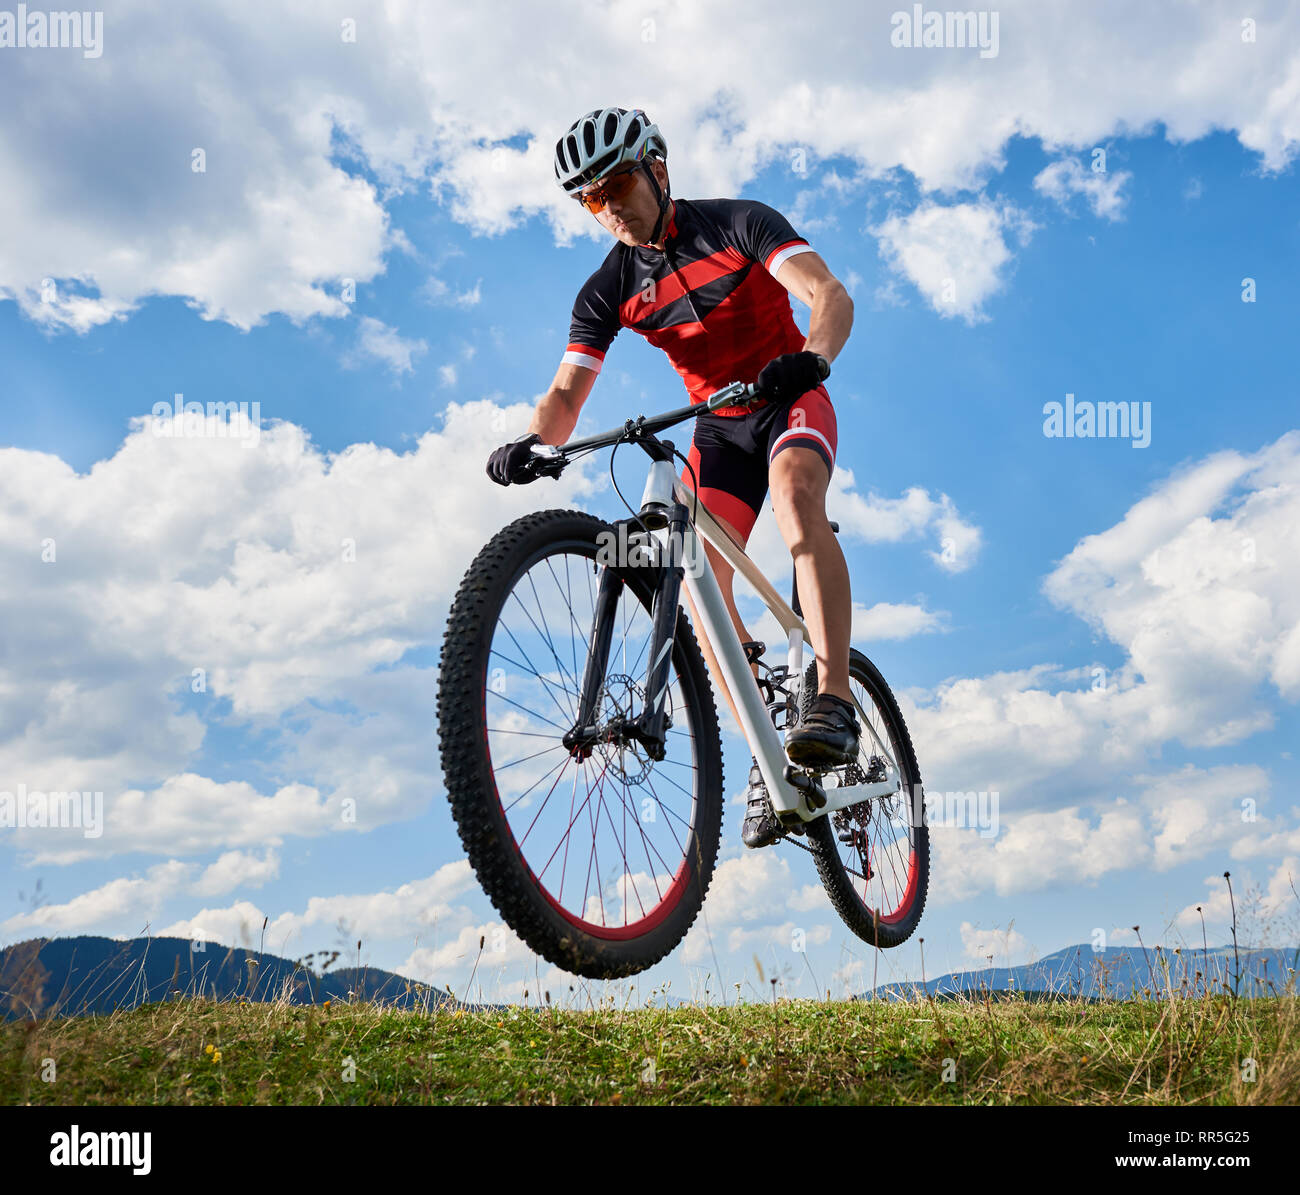 Jungen athletischen Sportler Biker in professionellen Sportswear fliegen in der Luft auf seinem Fahrrad am strahlend blauen Himmel mit weißen Wolken und die fernen Hügel im Hintergrund aktiv, Lifestyle- und Extreme Sport Konzept. Stockfoto